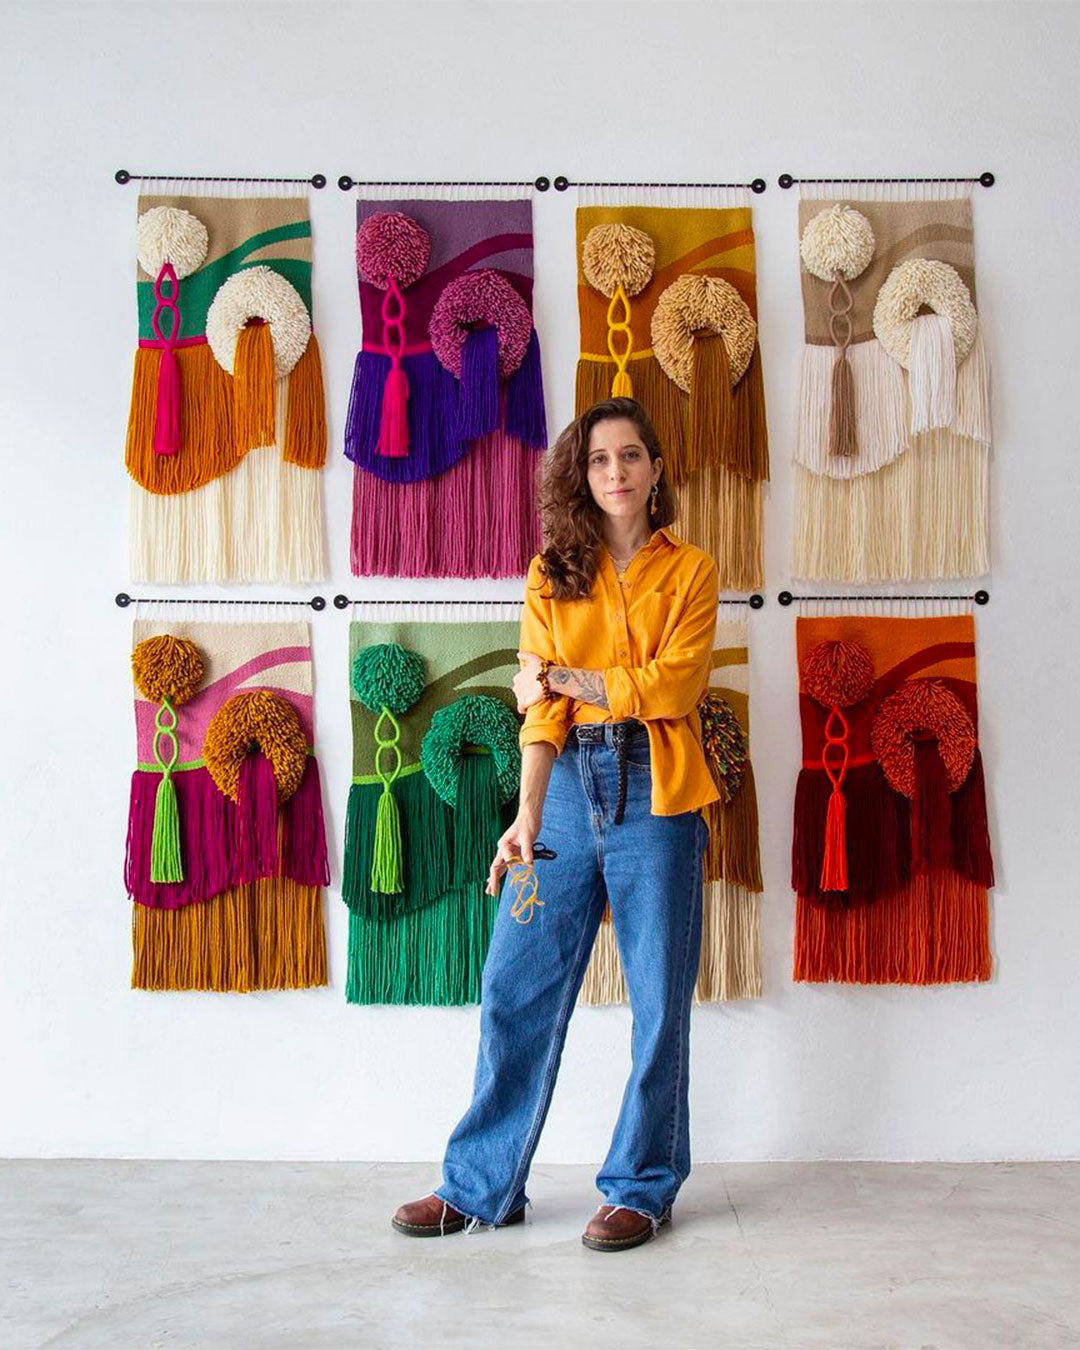 10 artistes textiles que vous devriez connaître - Luiza Caldari